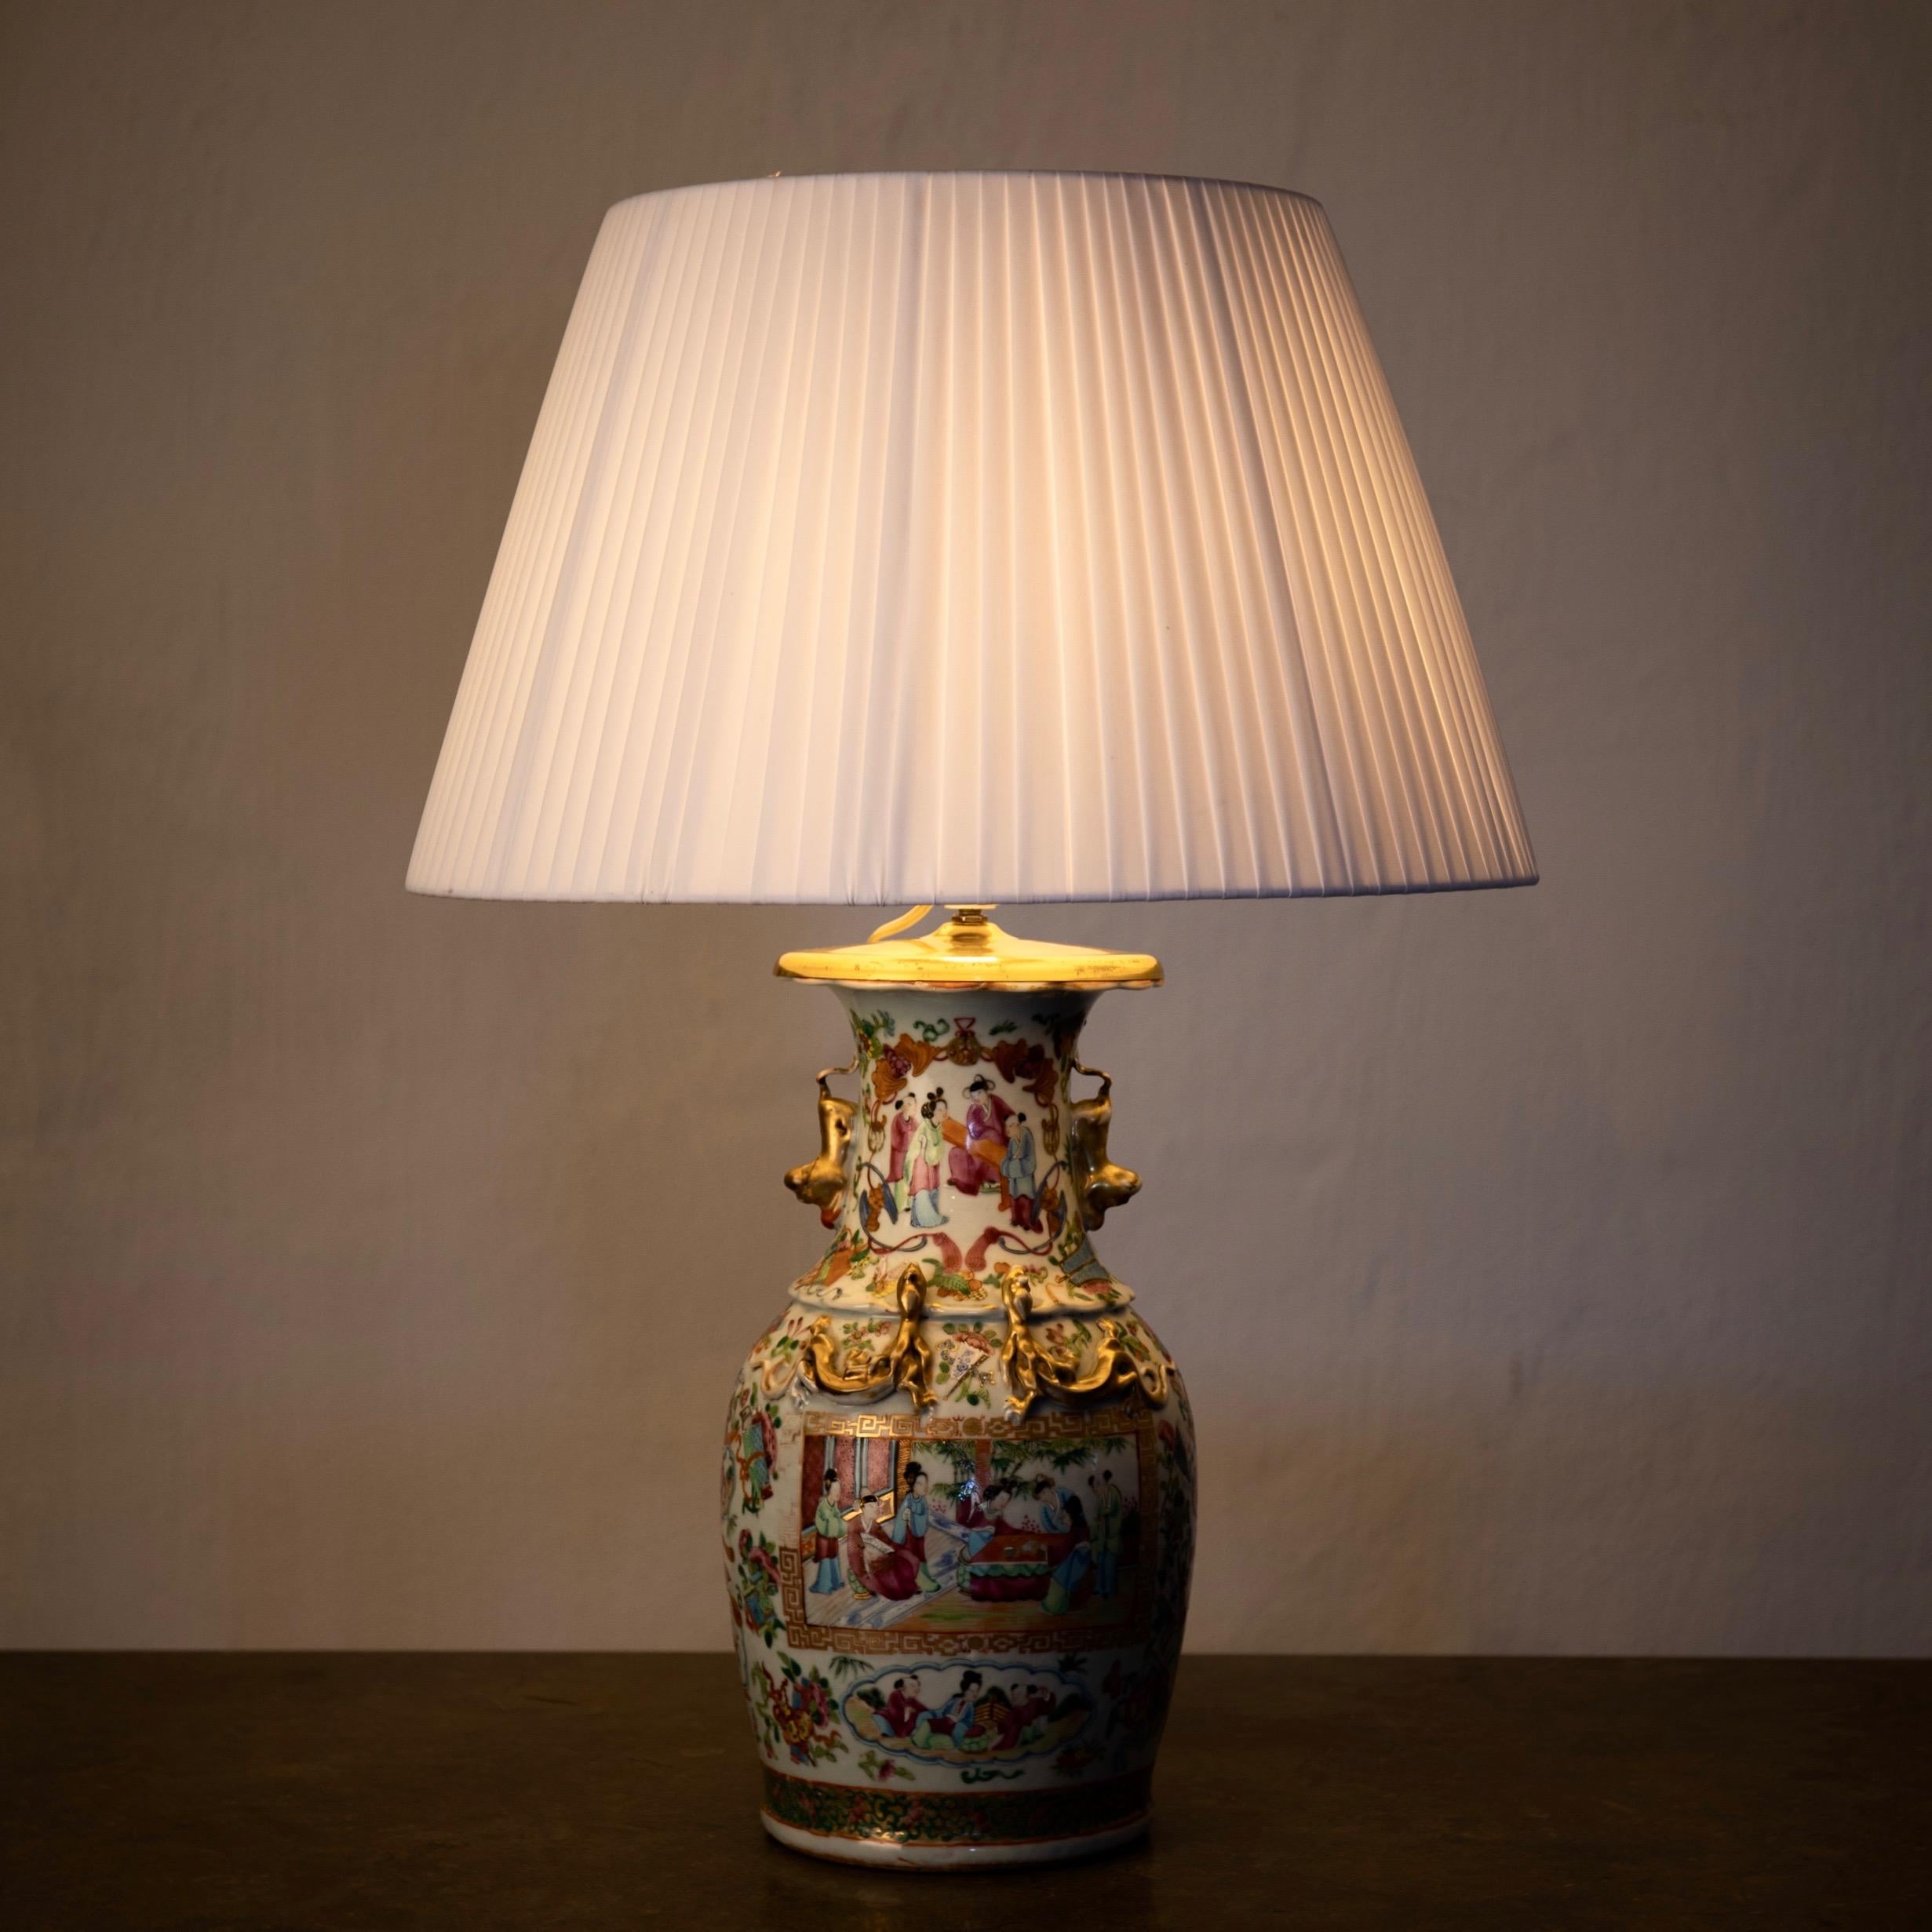 Lampe de table couleurs orientales 19ème siècle, Chine. Une lampe de table fabriquée au cours du 19e siècle en Chine. Multicolore avec des détails dorés.